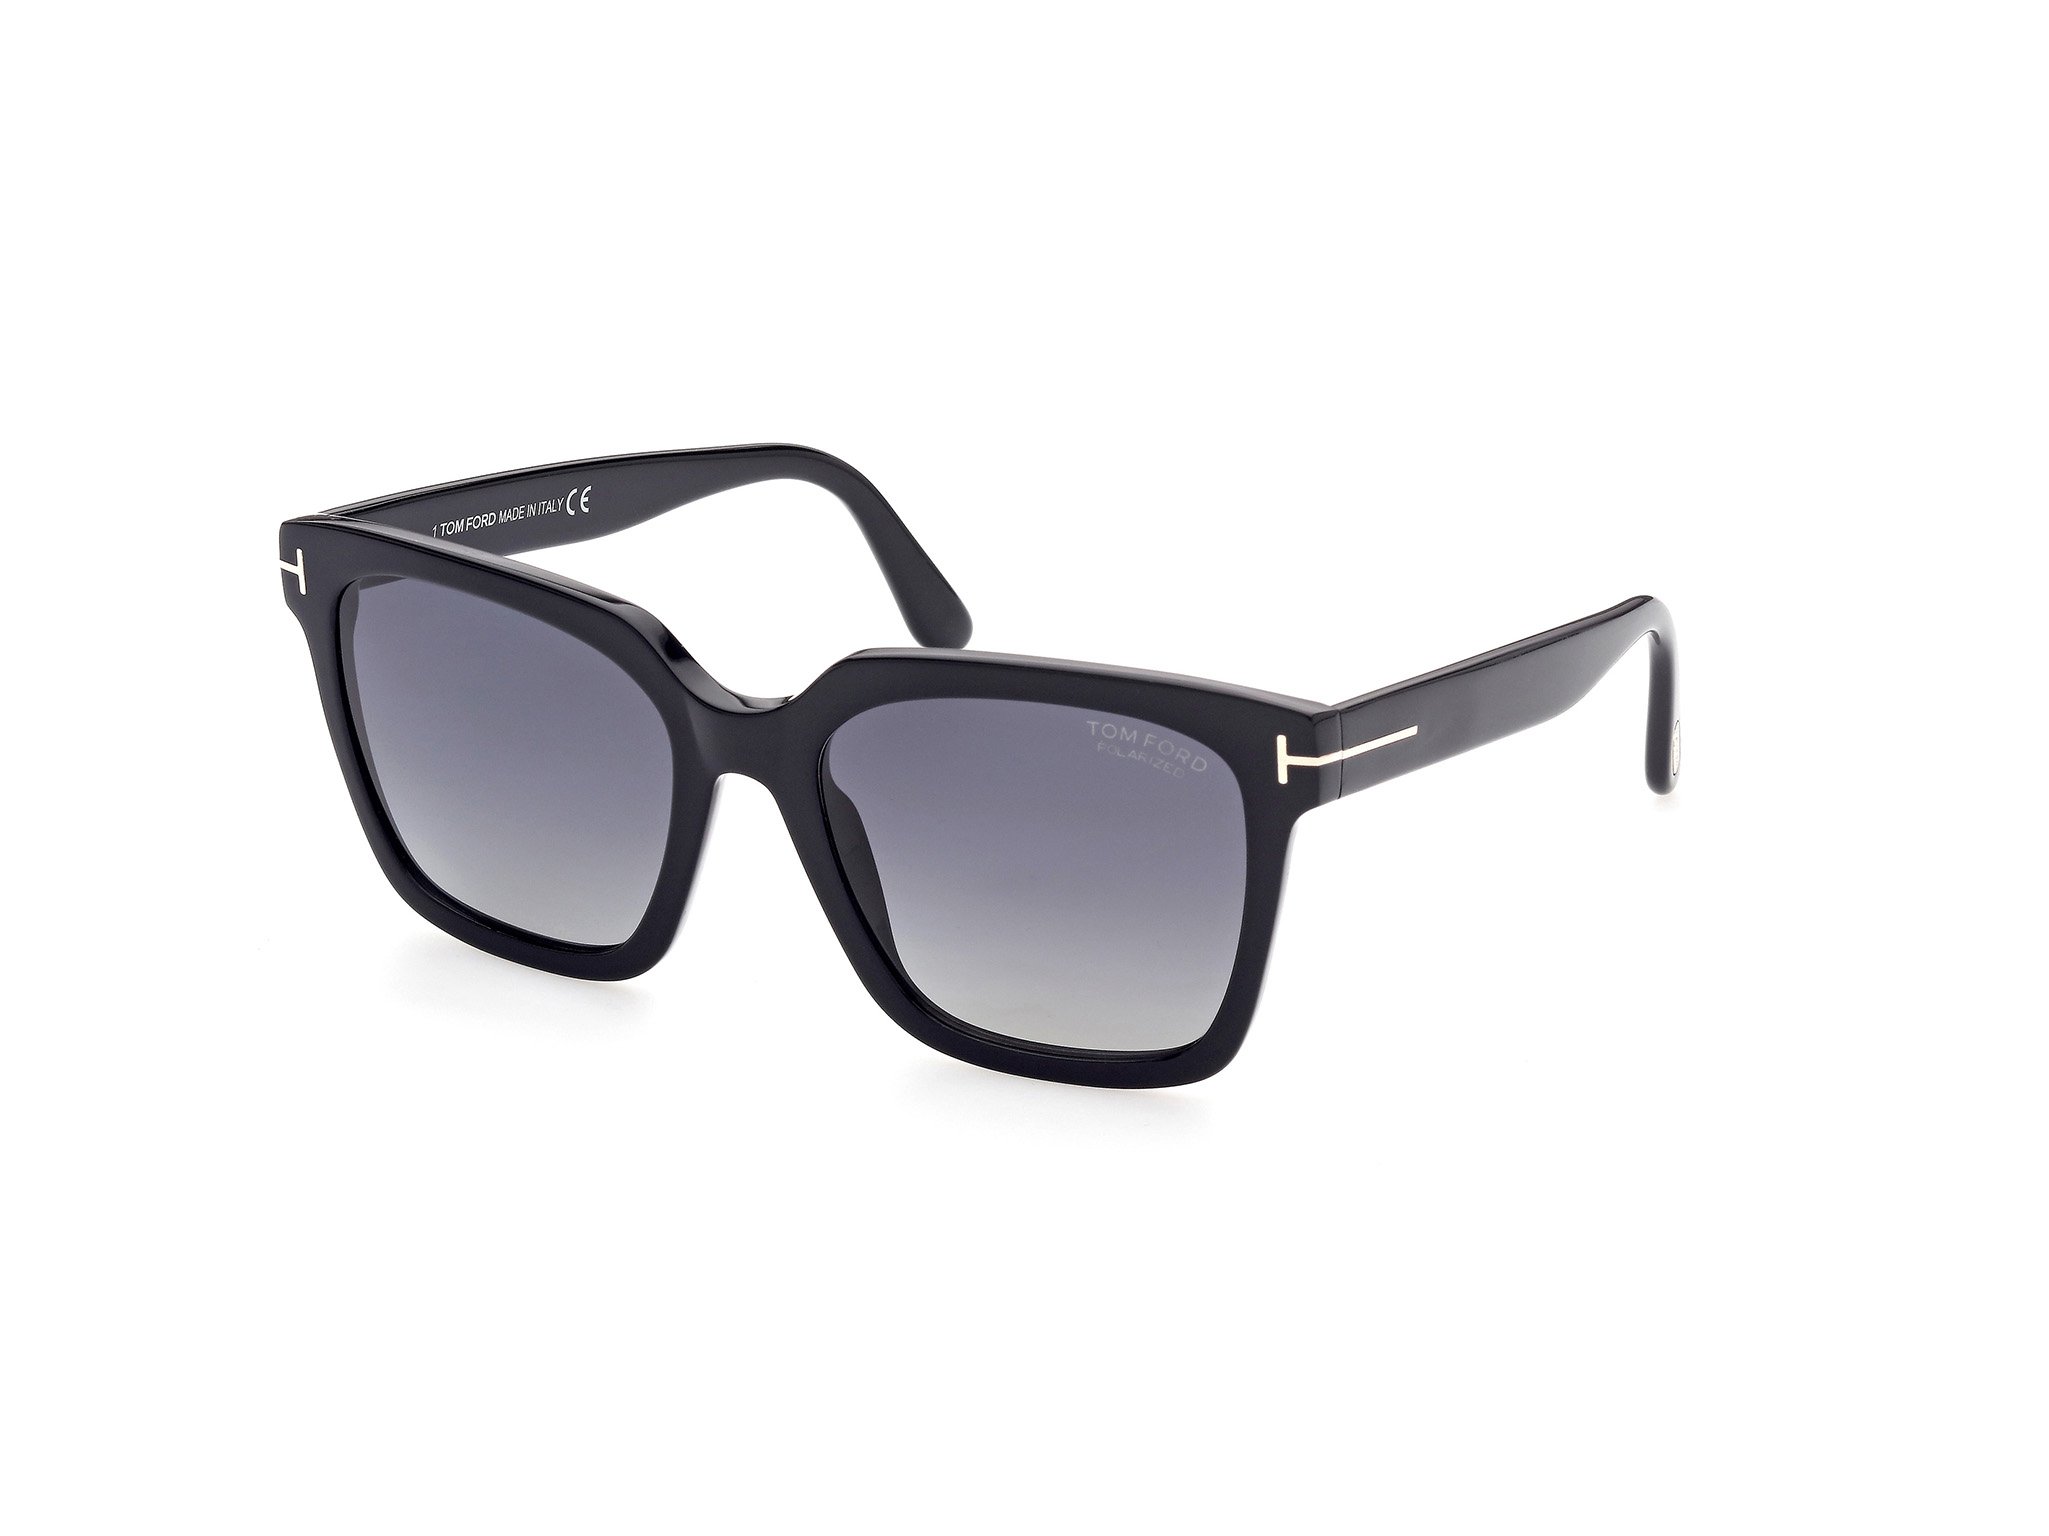 Das Bild zeigt die Sonnenbrille FT0952 01D von der Marke Tom Ford in schwarz.